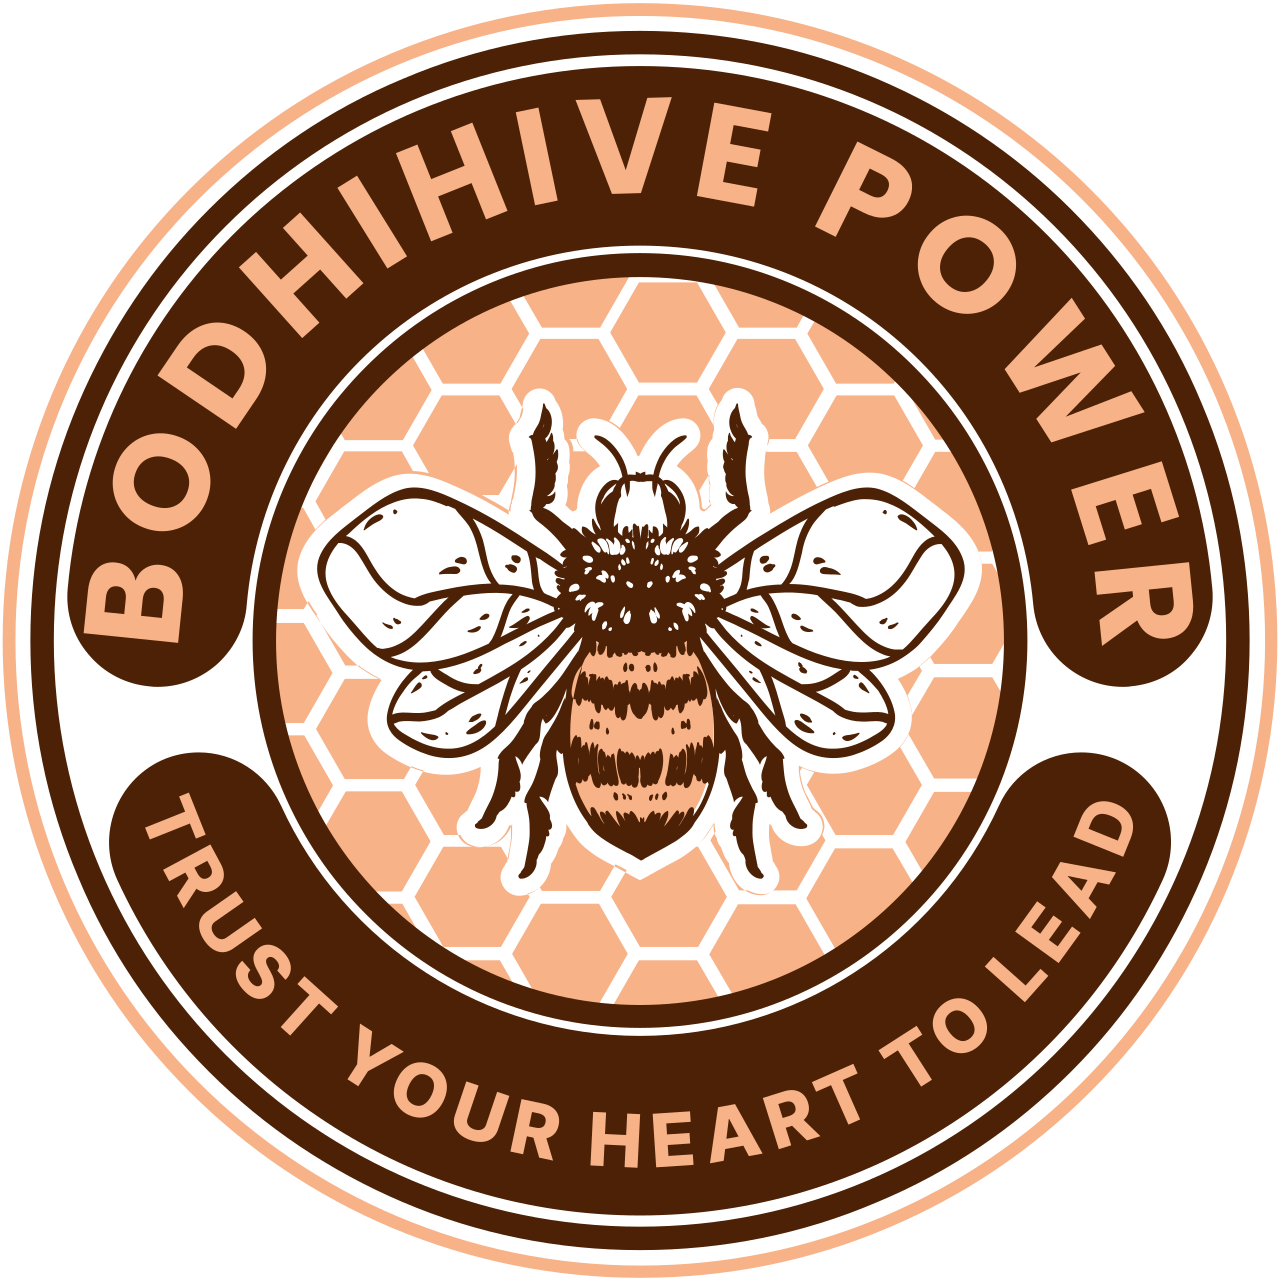 BodhiHive Power Life Coaching